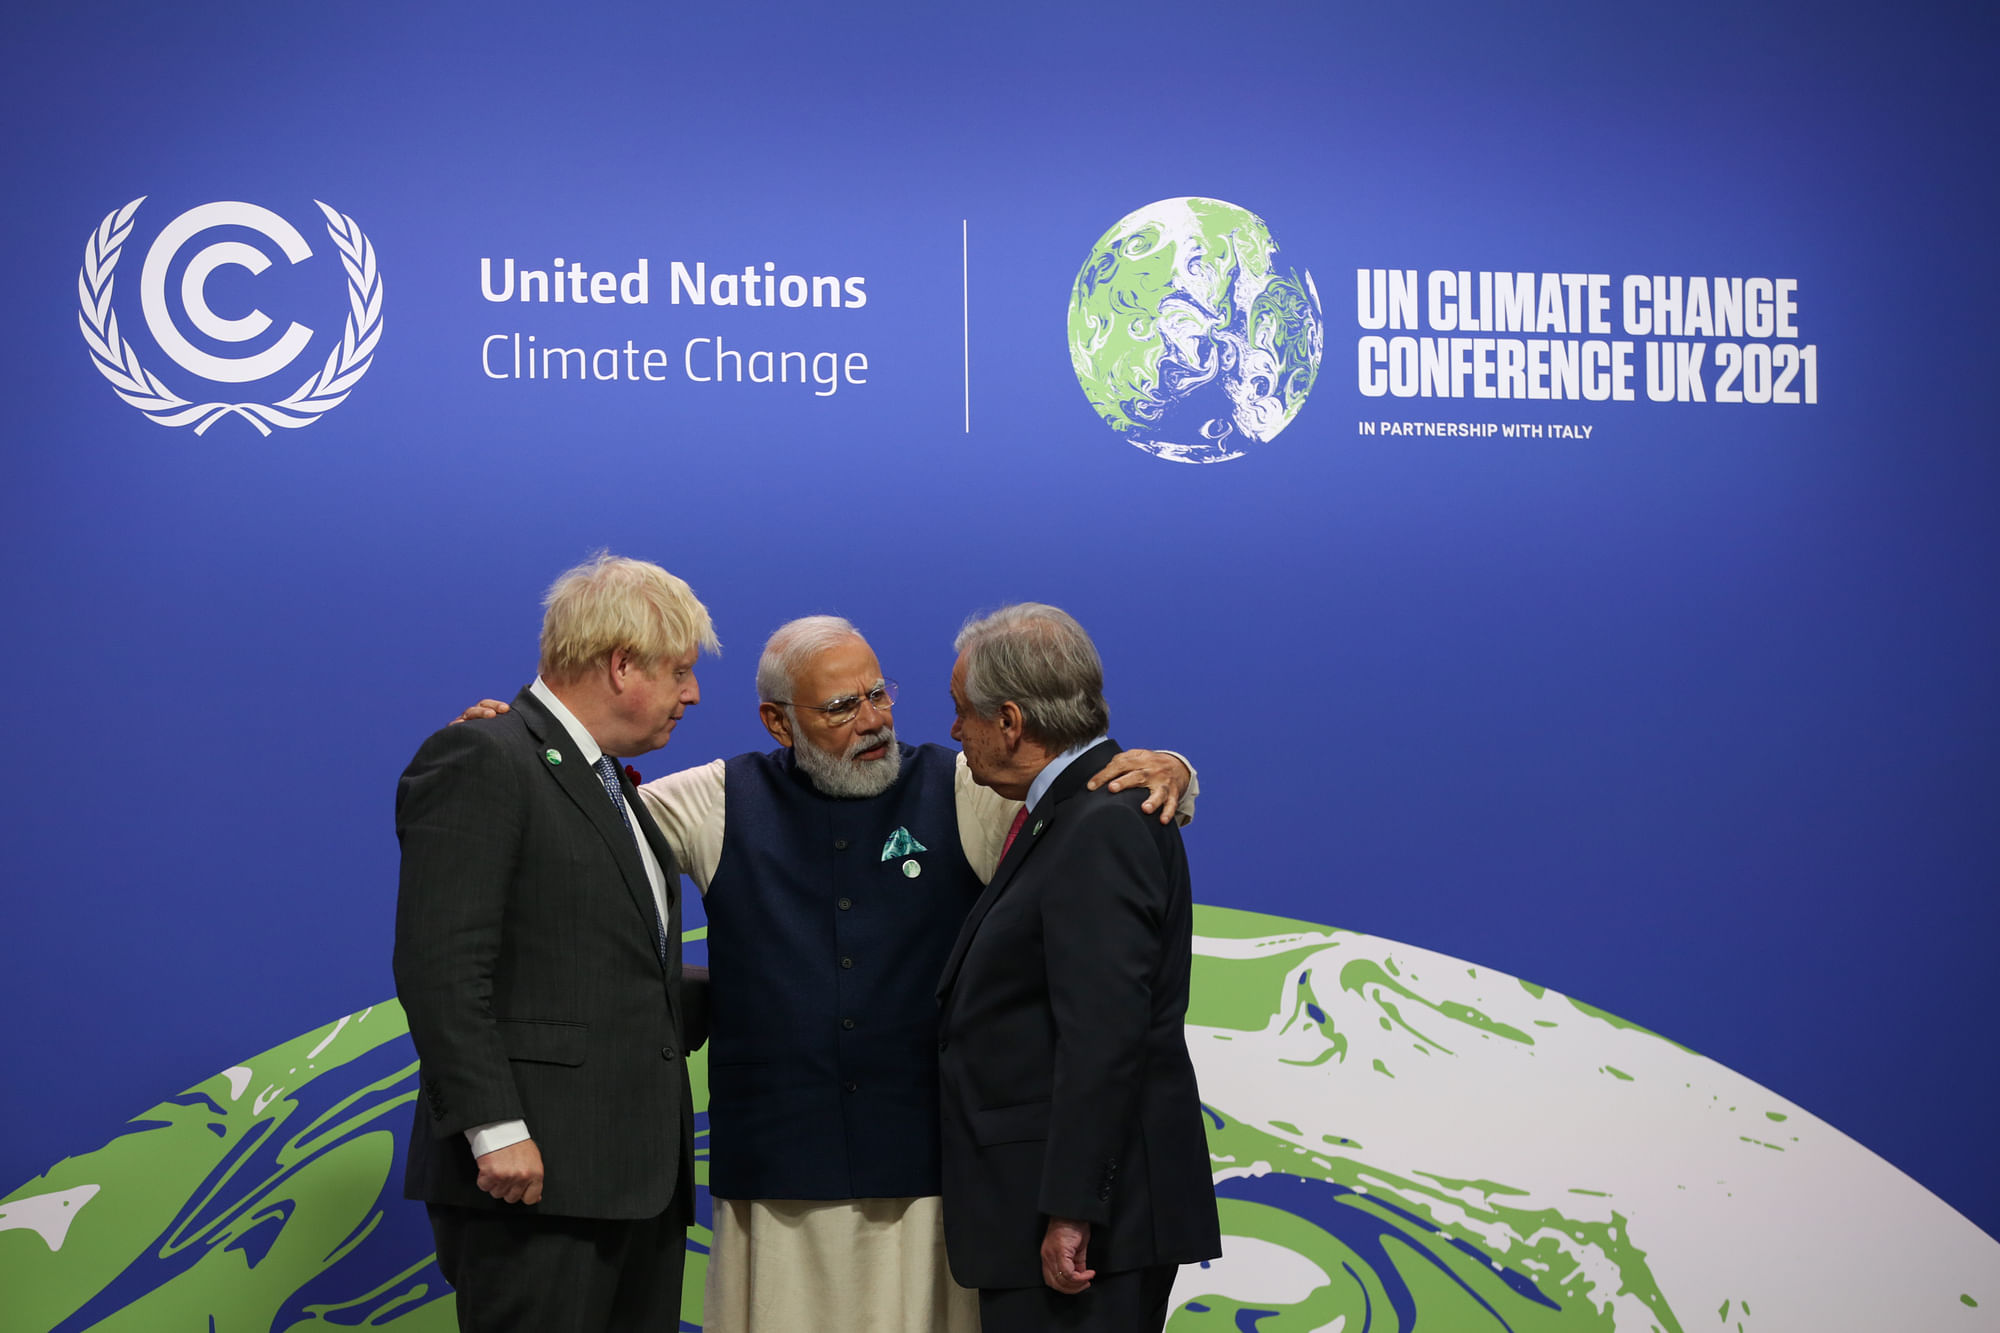 <div class="paragraphs"><p>PM Modi at COP 26 with Boris Johnson (left) and UN Chief Antonio Guterres (right) in Glasgow.&nbsp;&nbsp;</p></div>